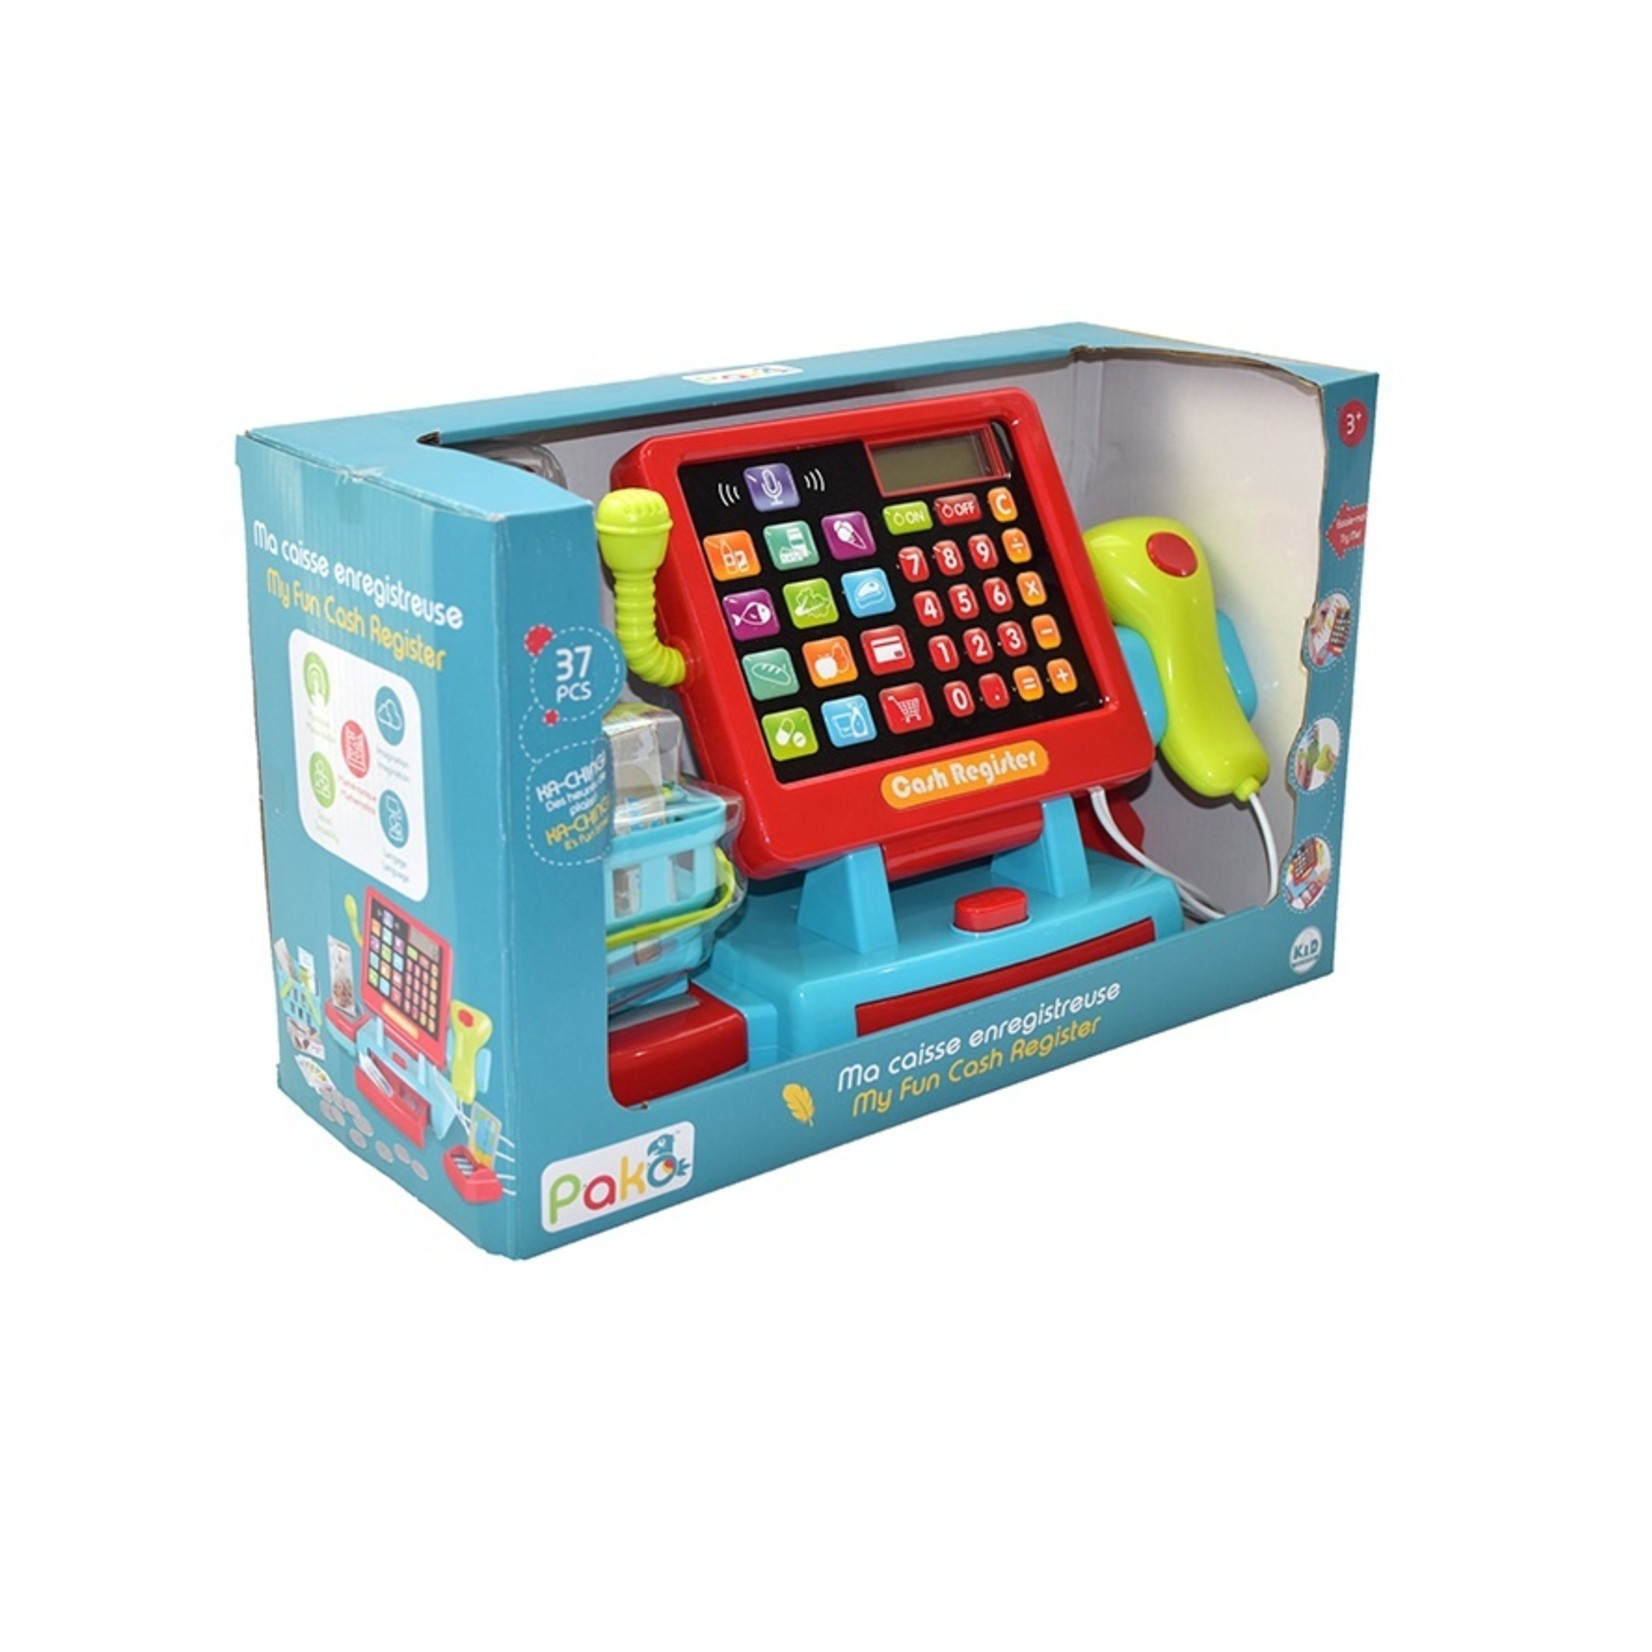 Caisse enregistreuse électronique Playgo pour enfants